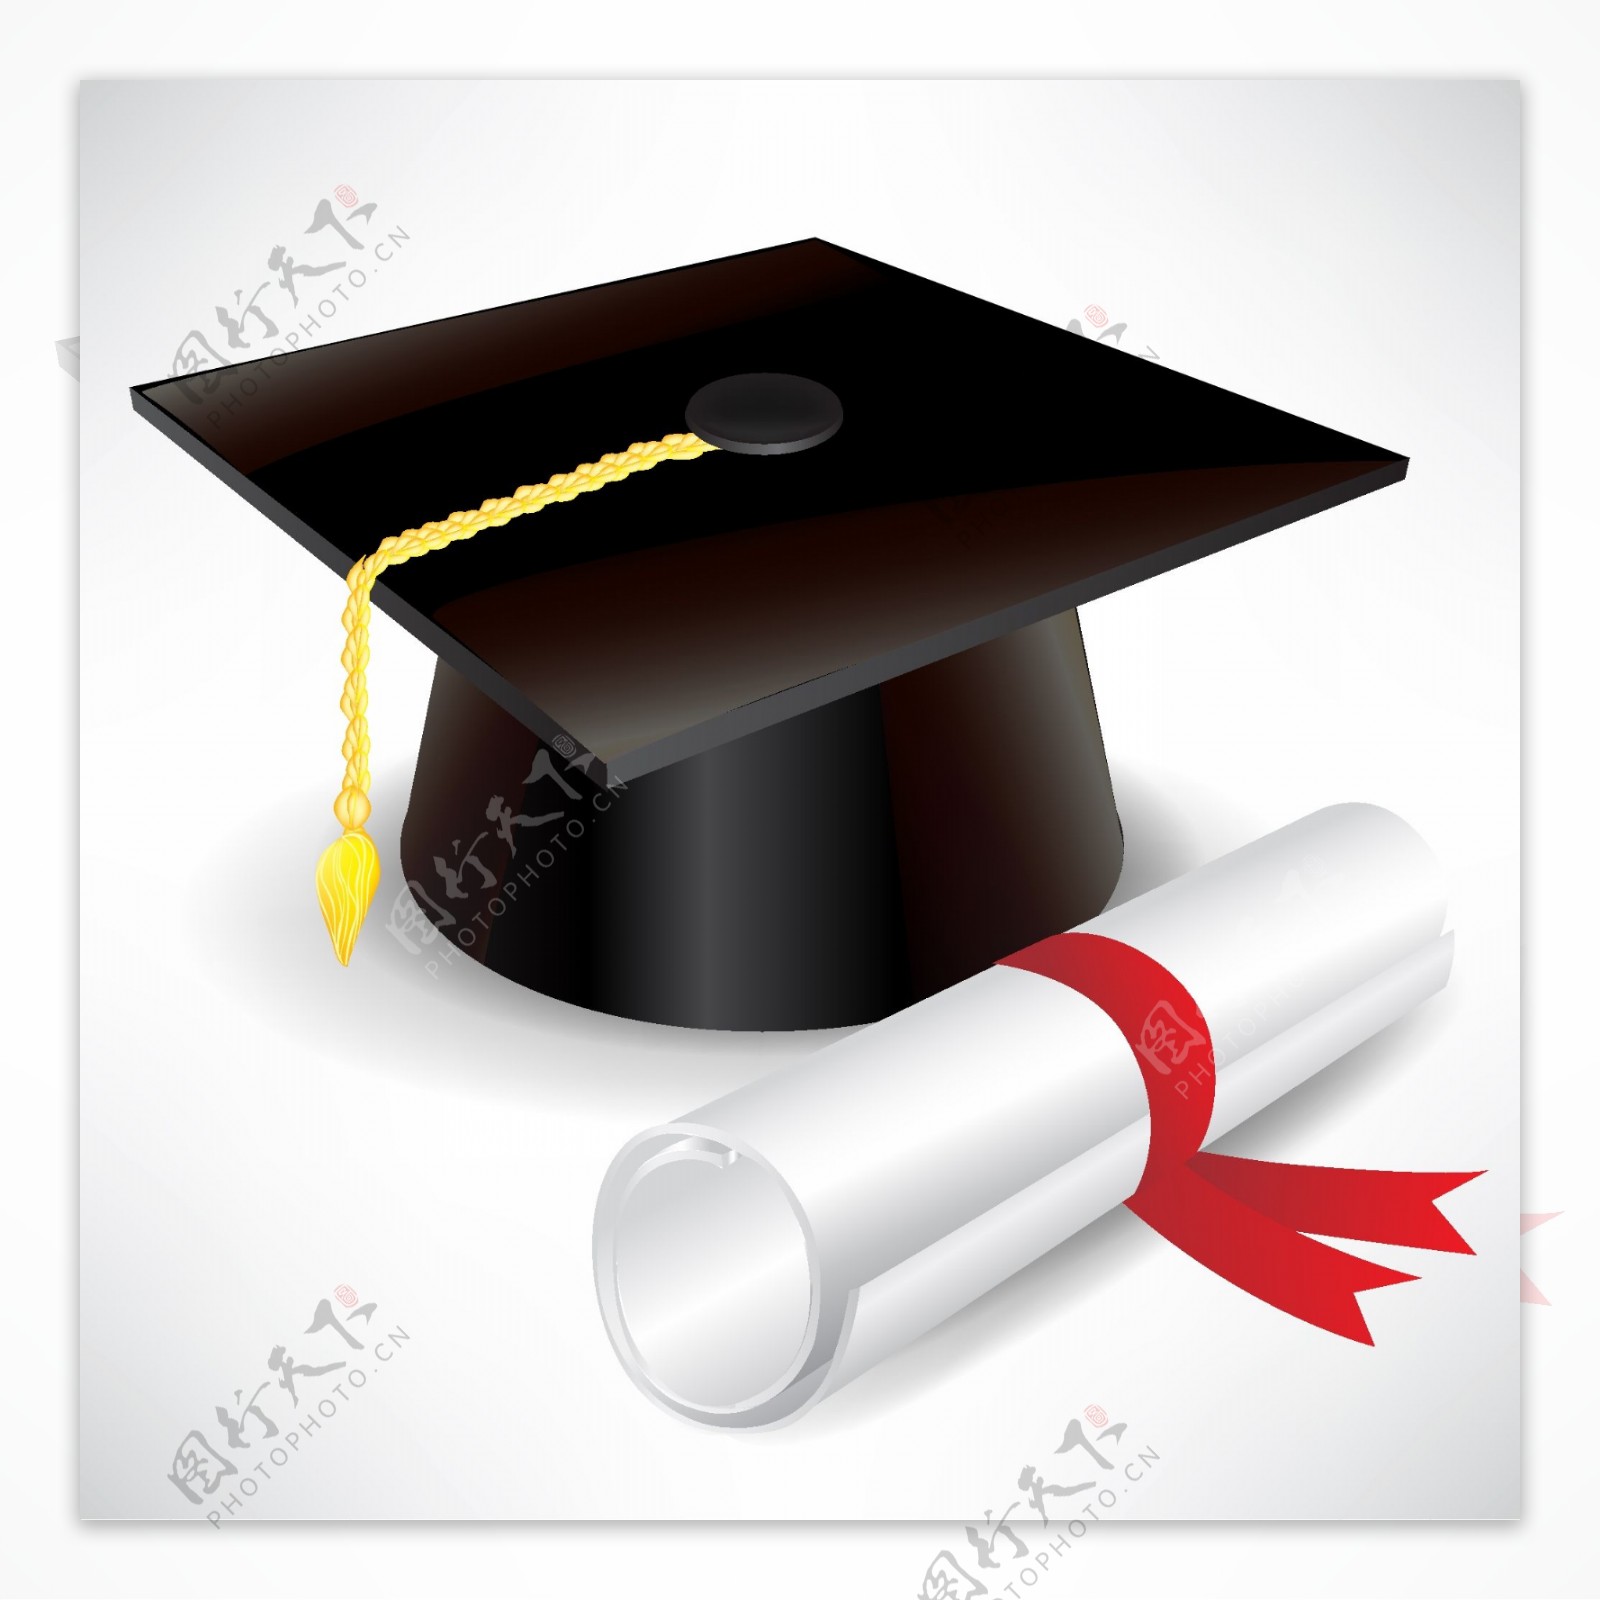 毕业帽和毕业设计02元素矢量素材